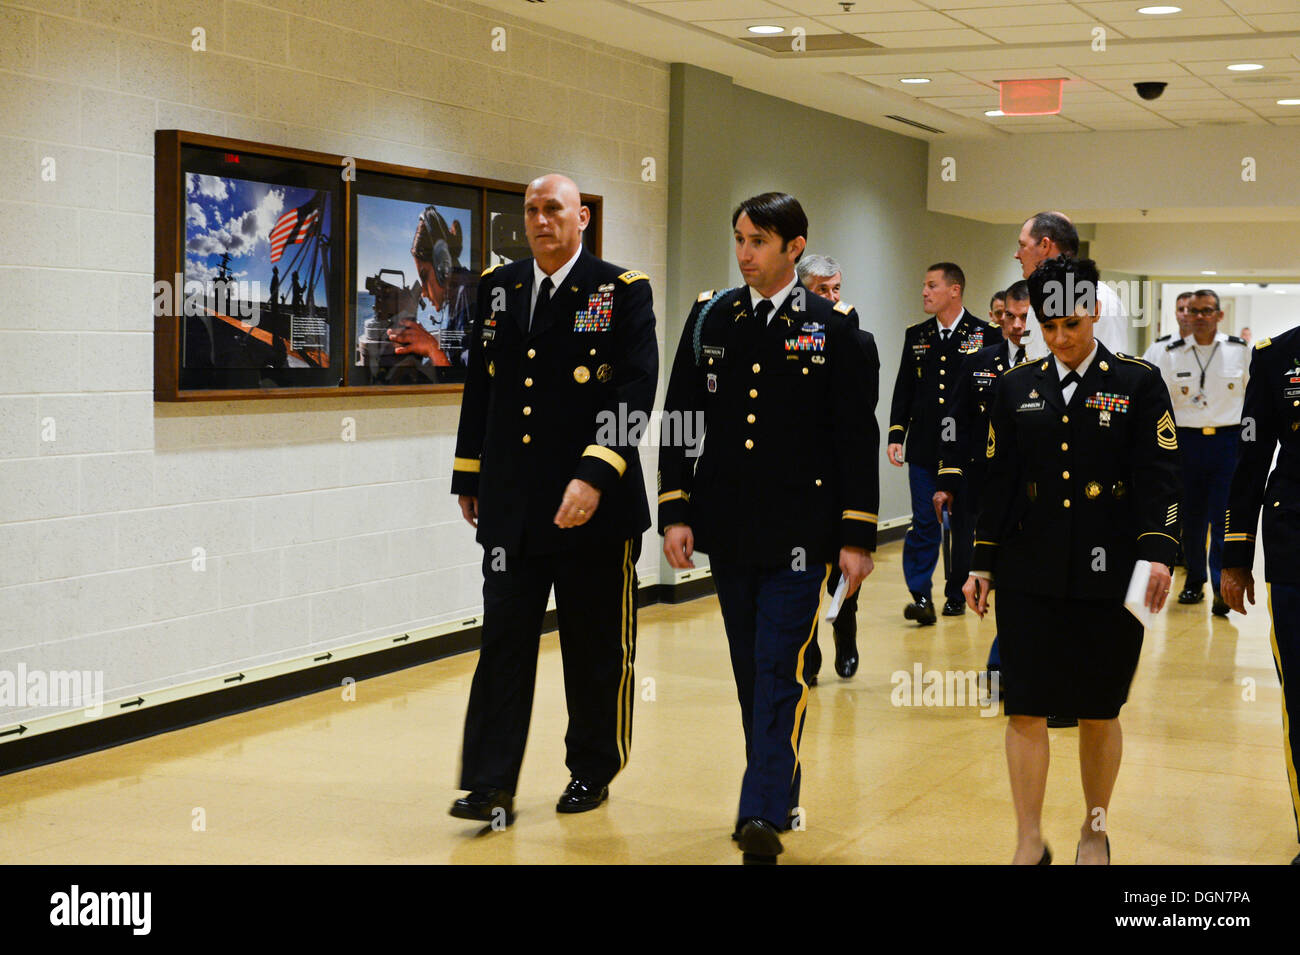 Stabschef der Armee General Raymond T. Odierno, ehemalige US Army Captain William D. Swenson, Ehrenmedaille Empfänger, besuchen seine Halle der Helden Induktion Zeremonie im Pentagon in Washington, D.C., 16. Oktober 2013. Stockfoto